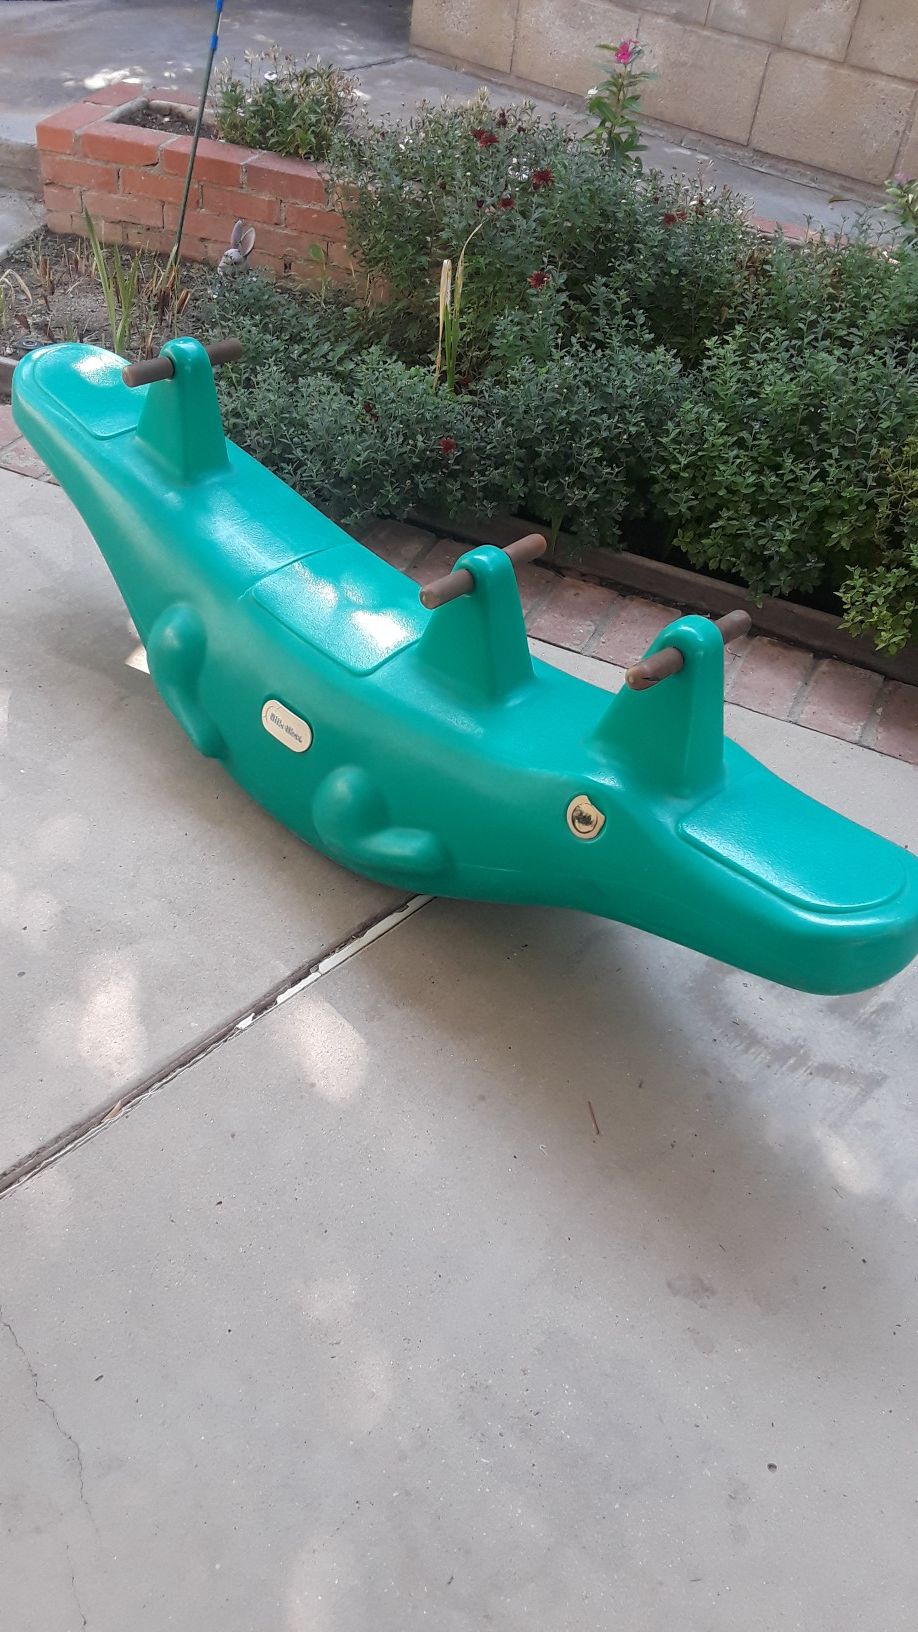 Outdoor alligator toy .